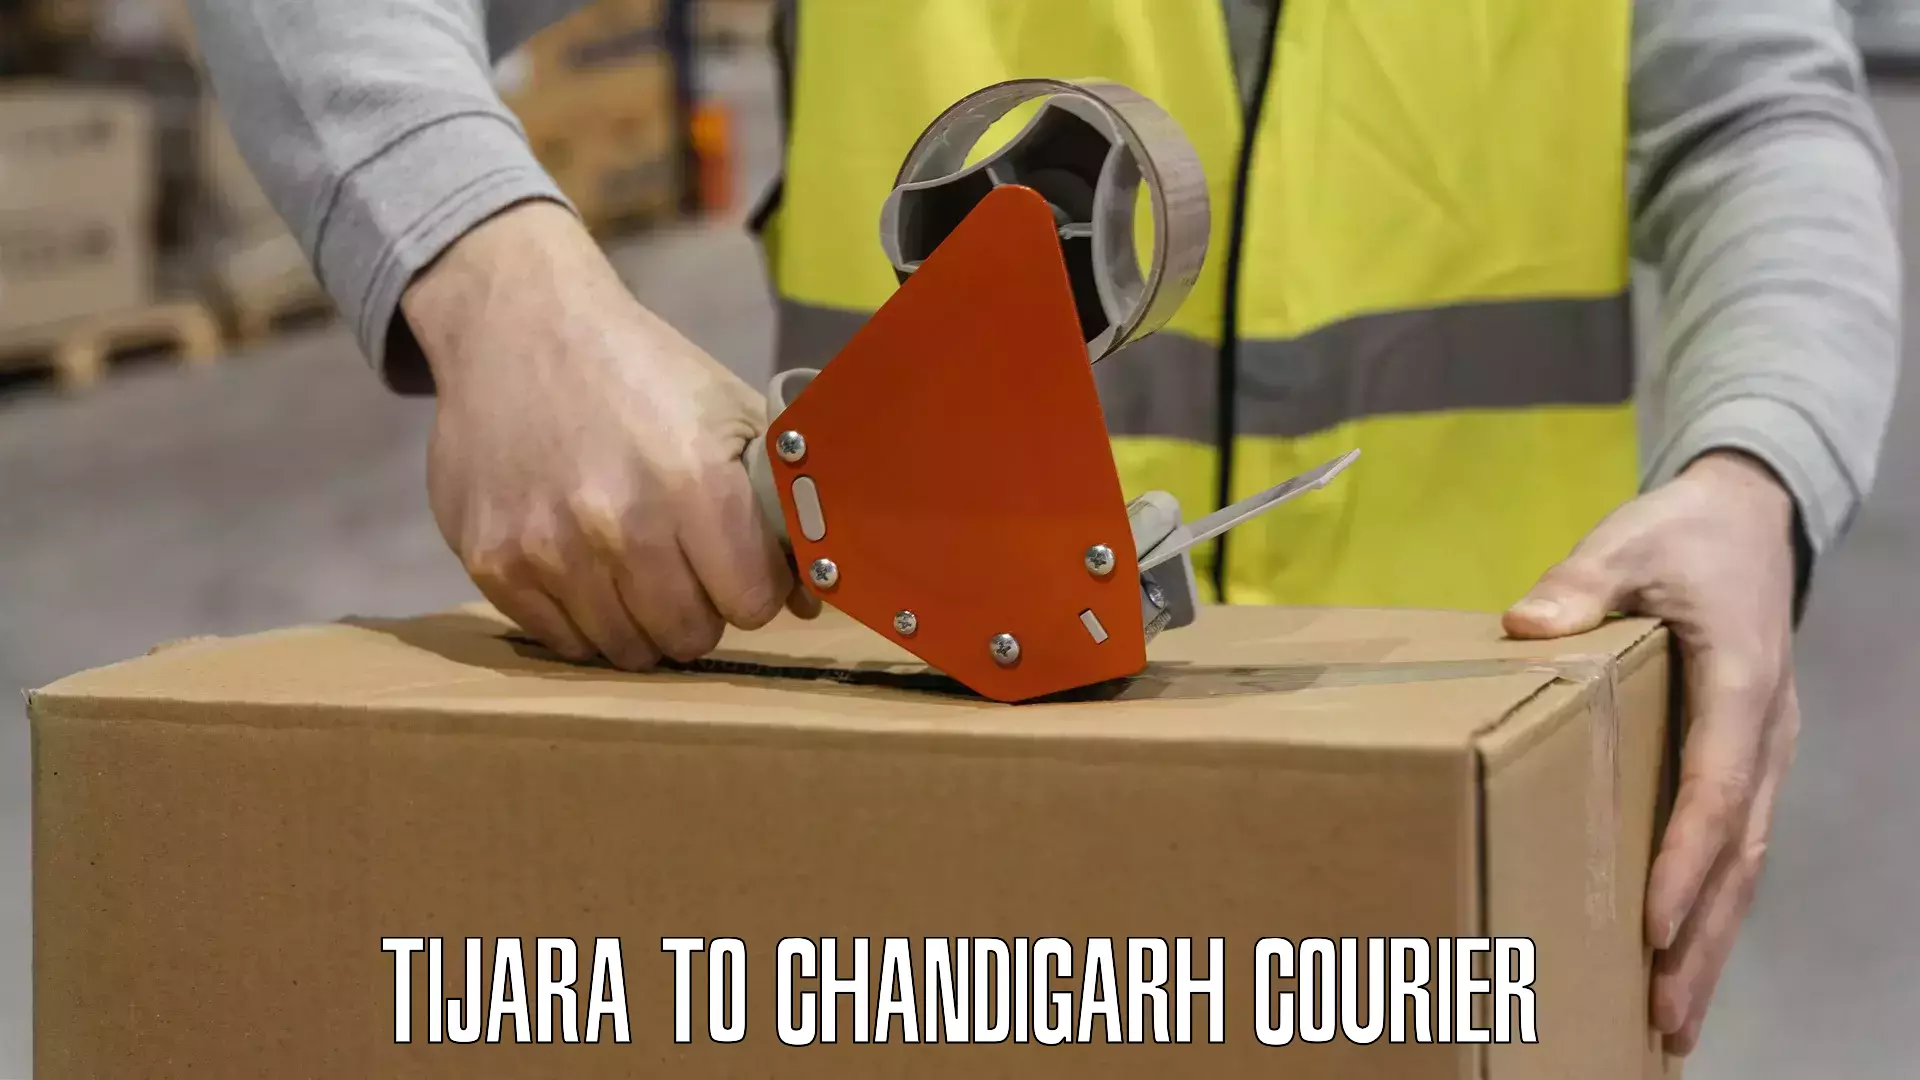 Courier insurance Tijara to Chandigarh